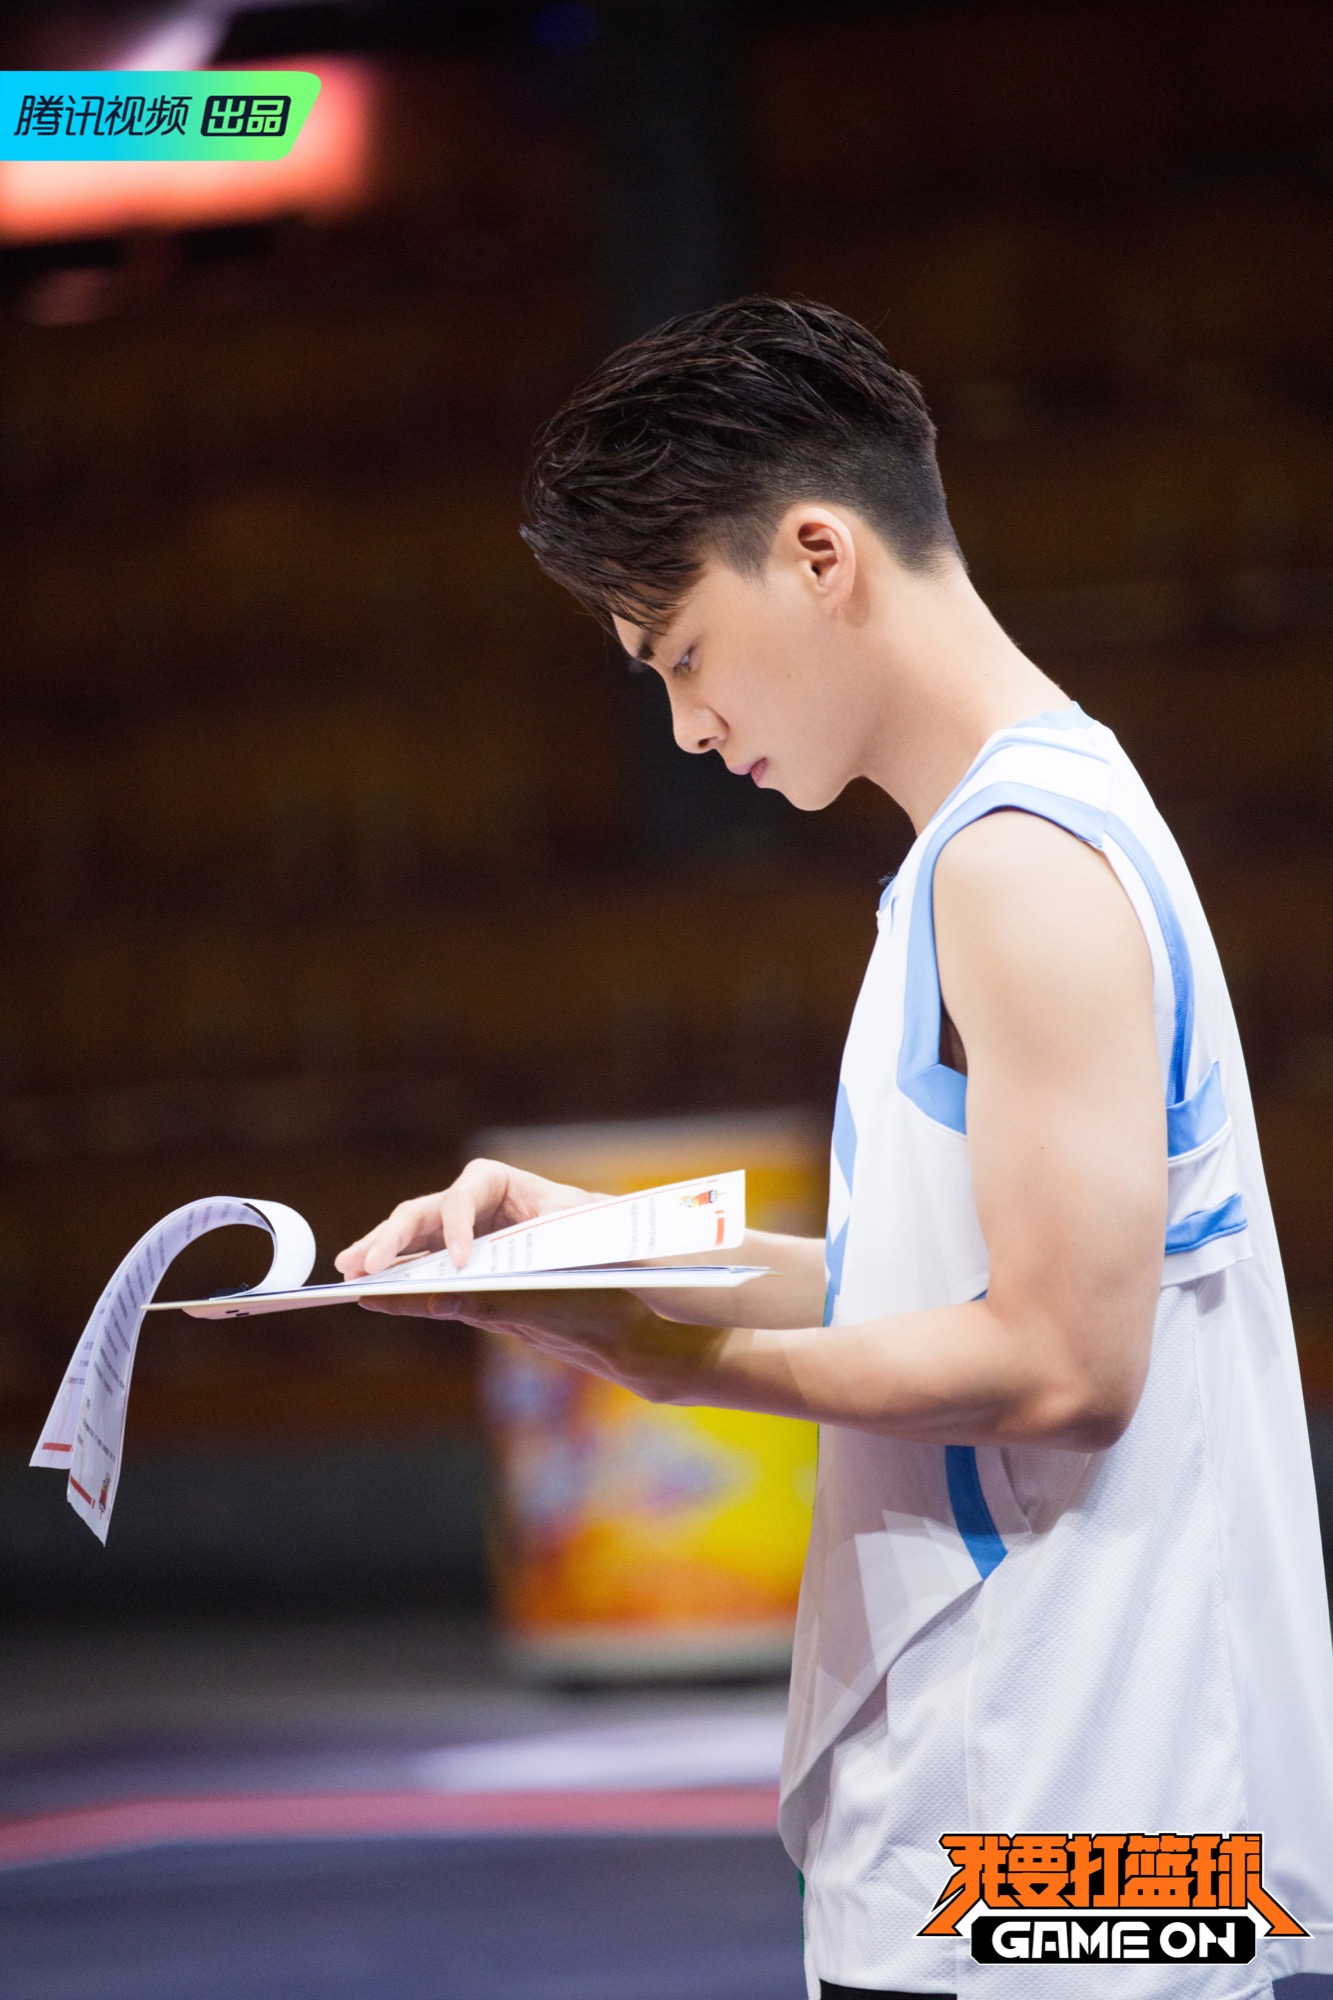 李易峰打篮球图片高清图片